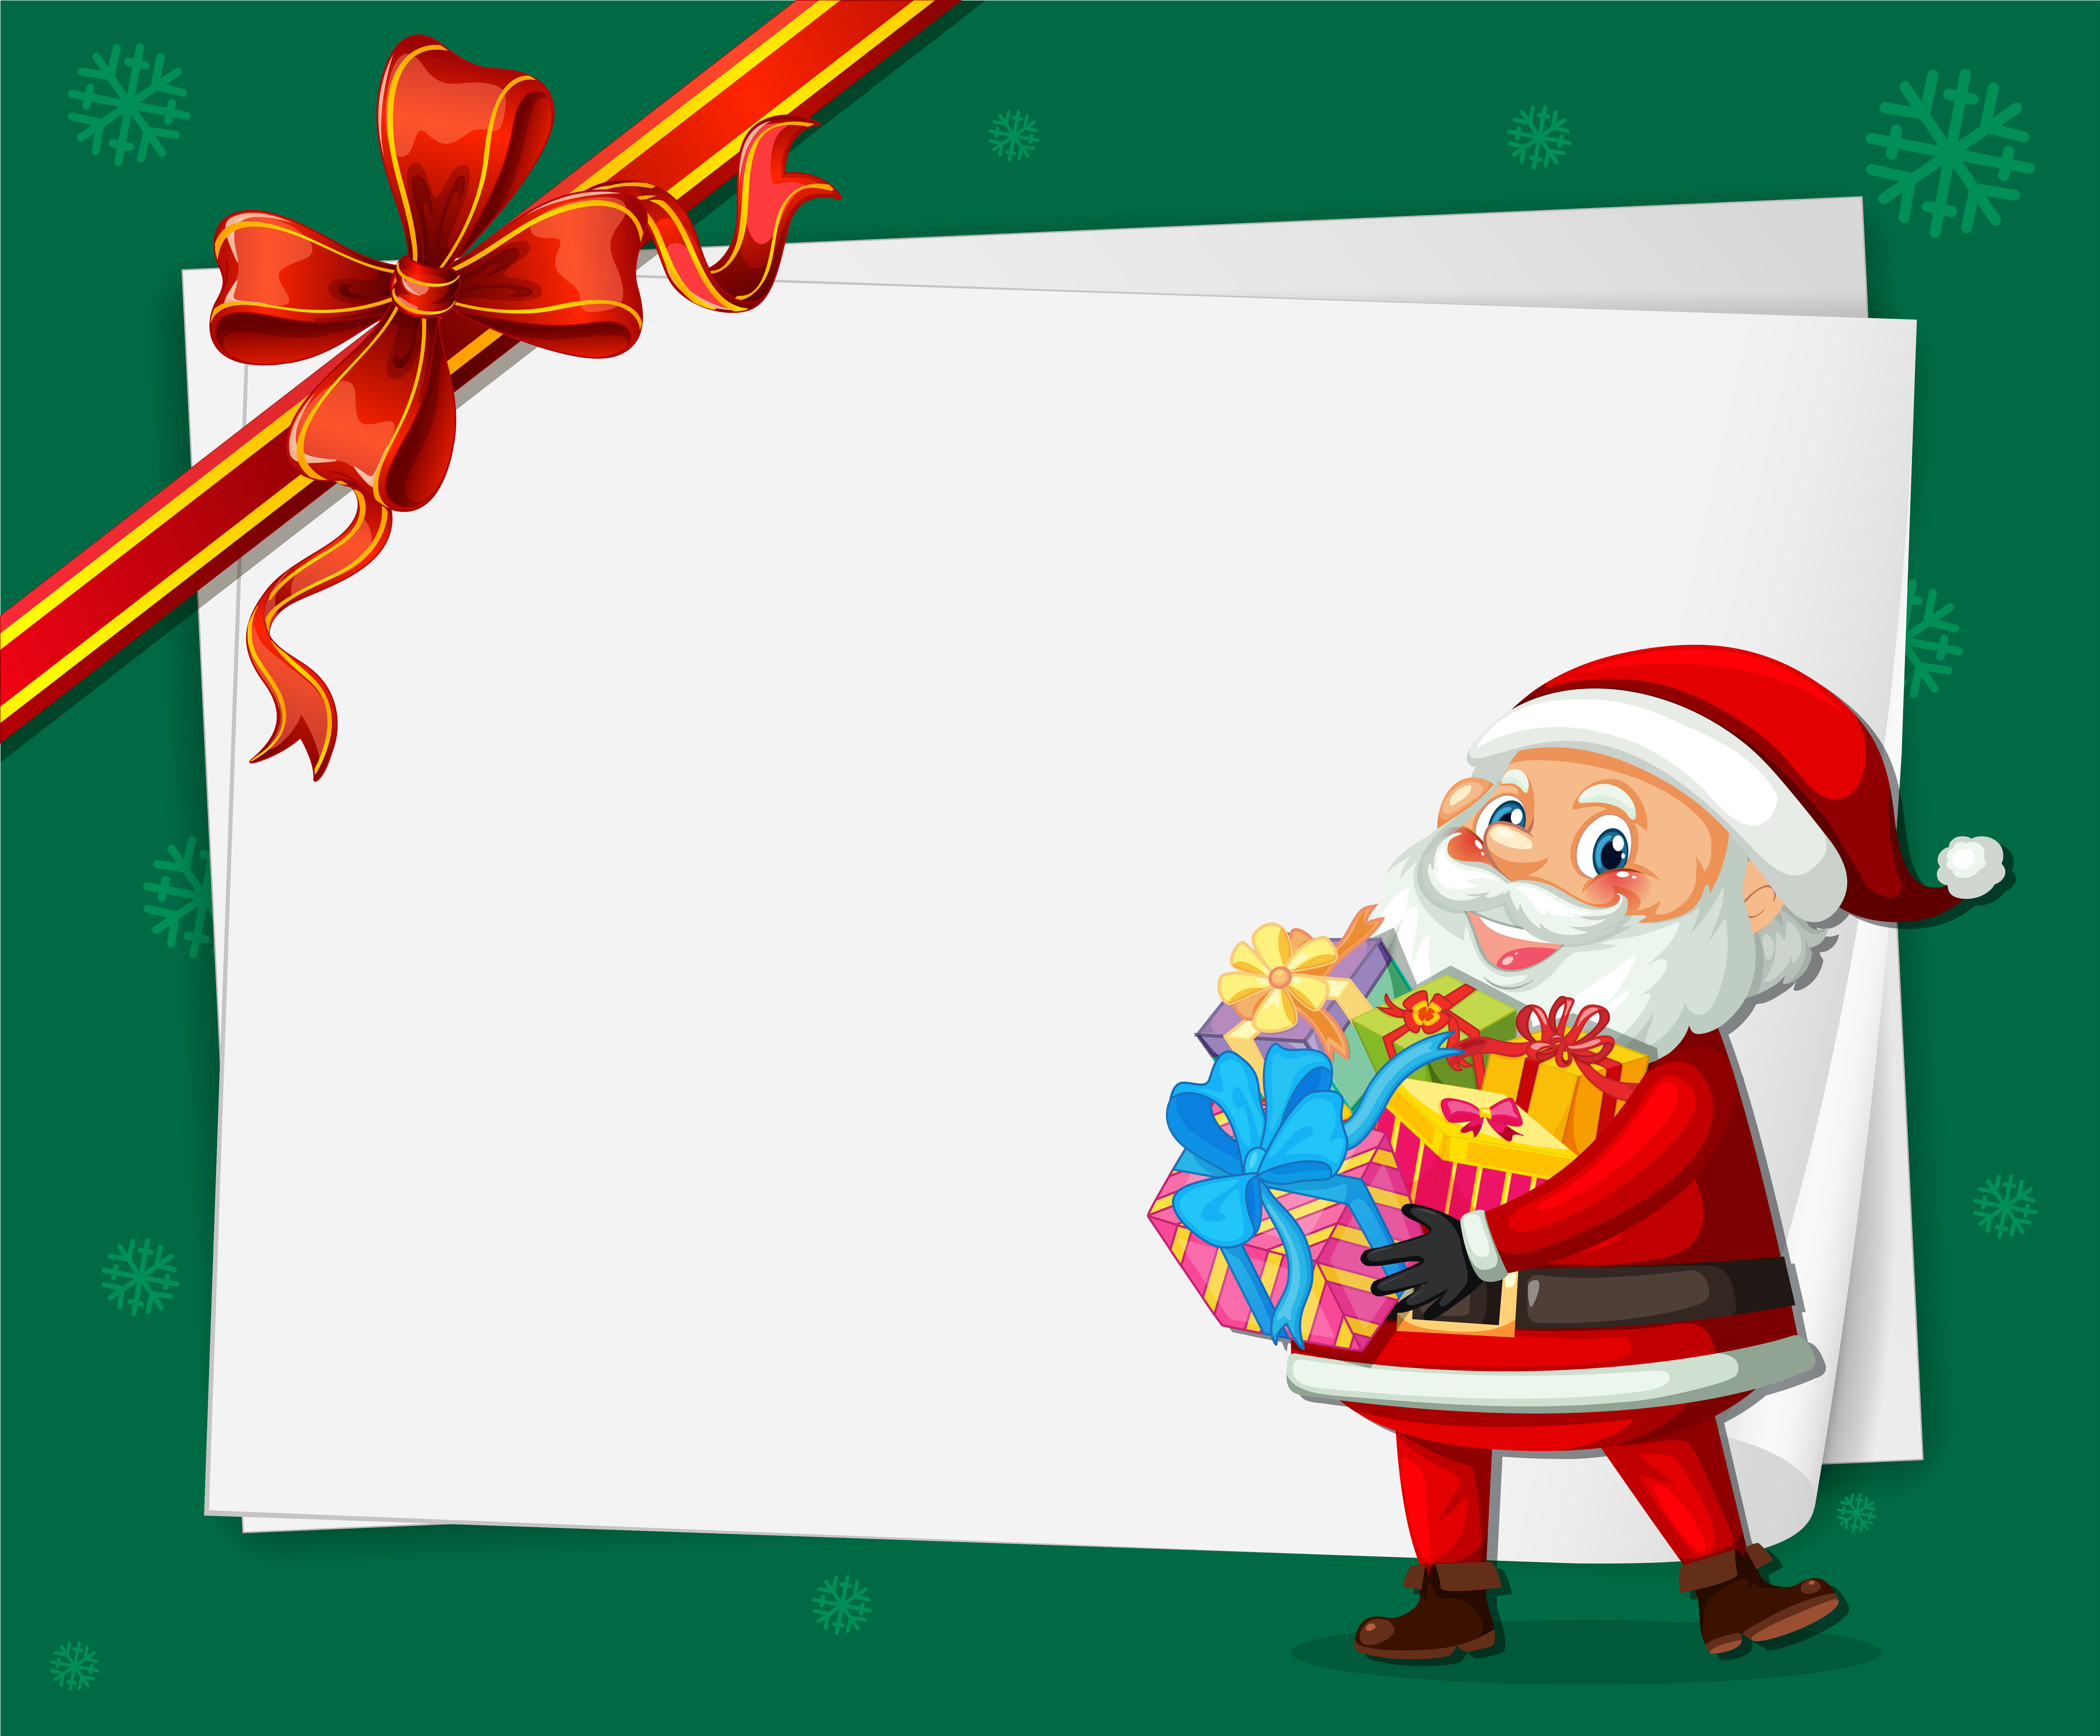 santa-on-christmas-card-template-369529-vector-art-at-vecteezy